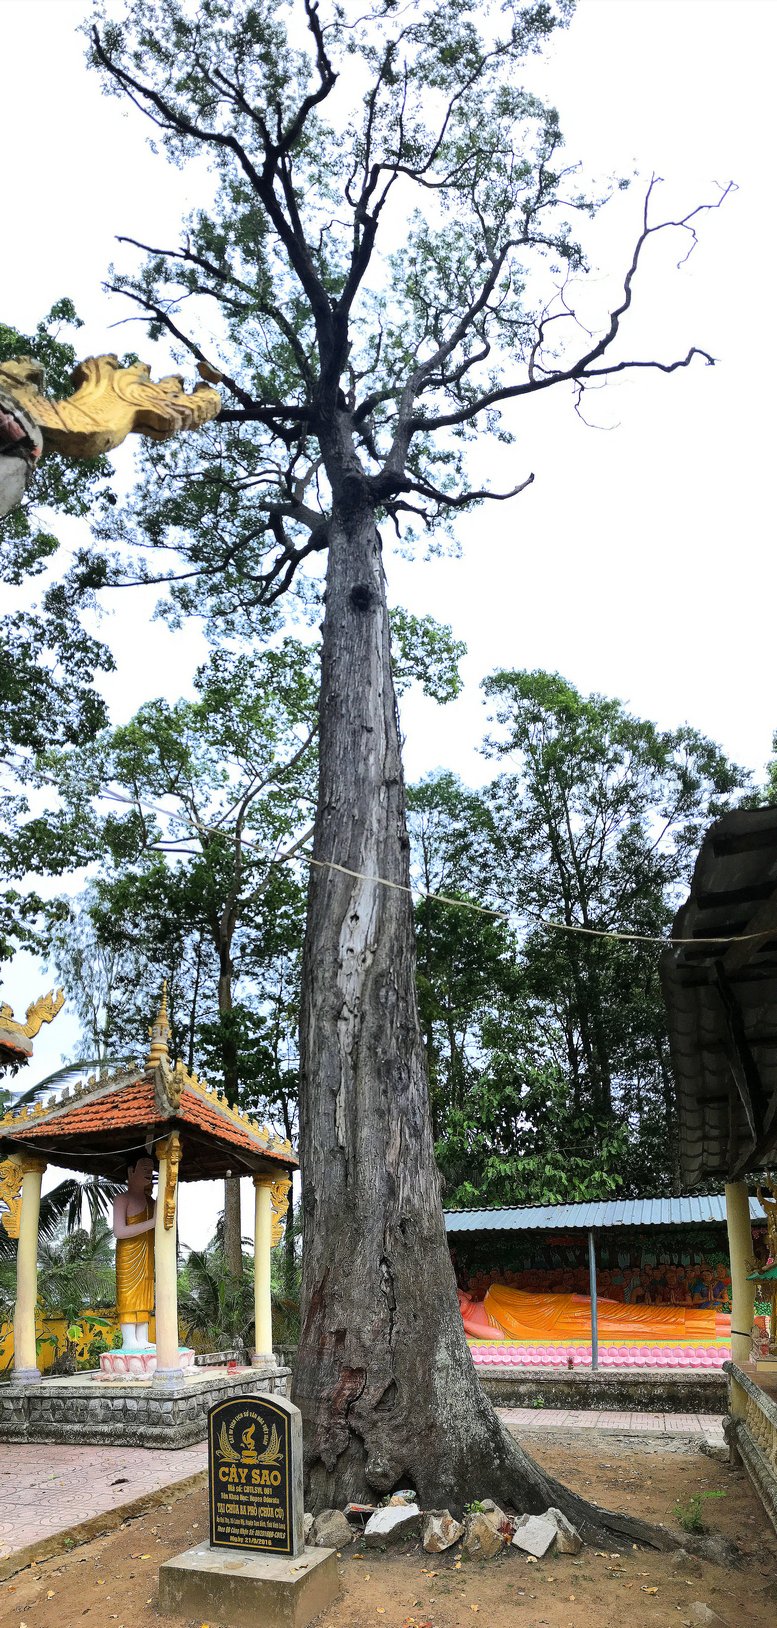 Cây sao nằm trong khuôn viên chùa Ba Phố có tuổi thọ lên đến 419 năm tuổi. Cây cao trên 55m, chu vi tán phủ trên 500m2, đường kính gốc trên 2m.